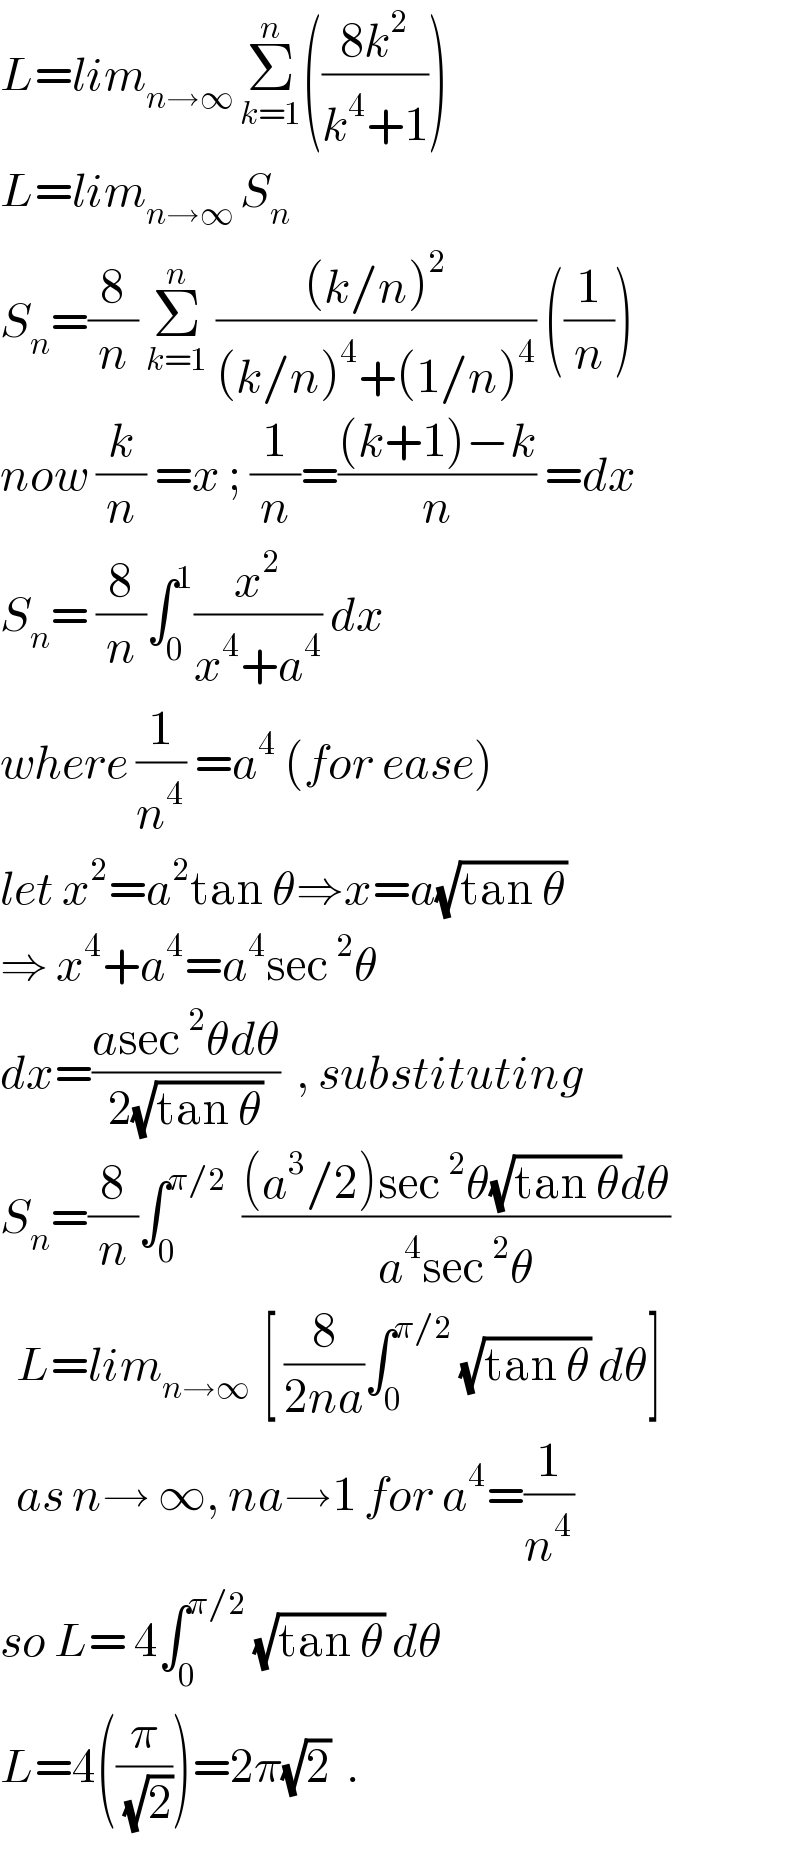 L=lim_(n→∞ ) Σ_(k=1) ^n (((8k^2 )/(k^4 +1)))  L=lim_(n→∞ ) S_n   S_n =(8/n) Σ_(k=1) ^n  (((k/n)^2 )/((k/n)^4 +(1/n)^4 )) ((1/n))  now (k/n) =x ; (1/n)=(((k+1)−k)/n) =dx  S_n = (8/n)∫_0 ^1 (x^2 /(x^4 +a^4 )) dx   where (1/n^4 ) =a^4  (for ease)  let x^2 =a^2 tan θ⇒x=a(√(tan θ))  ⇒ x^4 +a^4 =a^4 sec^2 θ  dx=((asec^2 θdθ)/(2(√(tan θ))))  , substituting  S_n =(8/n)∫_0 ^(π/2)   (((a^3 /2)sec^2 θ(√(tan θ))dθ)/(a^4 sec^2 θ))    L=lim_(n→∞  ) [ (8/(2na))∫_0 ^(π/2)  (√(tan θ)) dθ]    as n→ ∞, na→1 for a^4 =(1/n^4 )  so L= 4∫_0 ^(π/2)  (√(tan θ)) dθ  L=4((π/( (√2))))=2π(√2)  .  